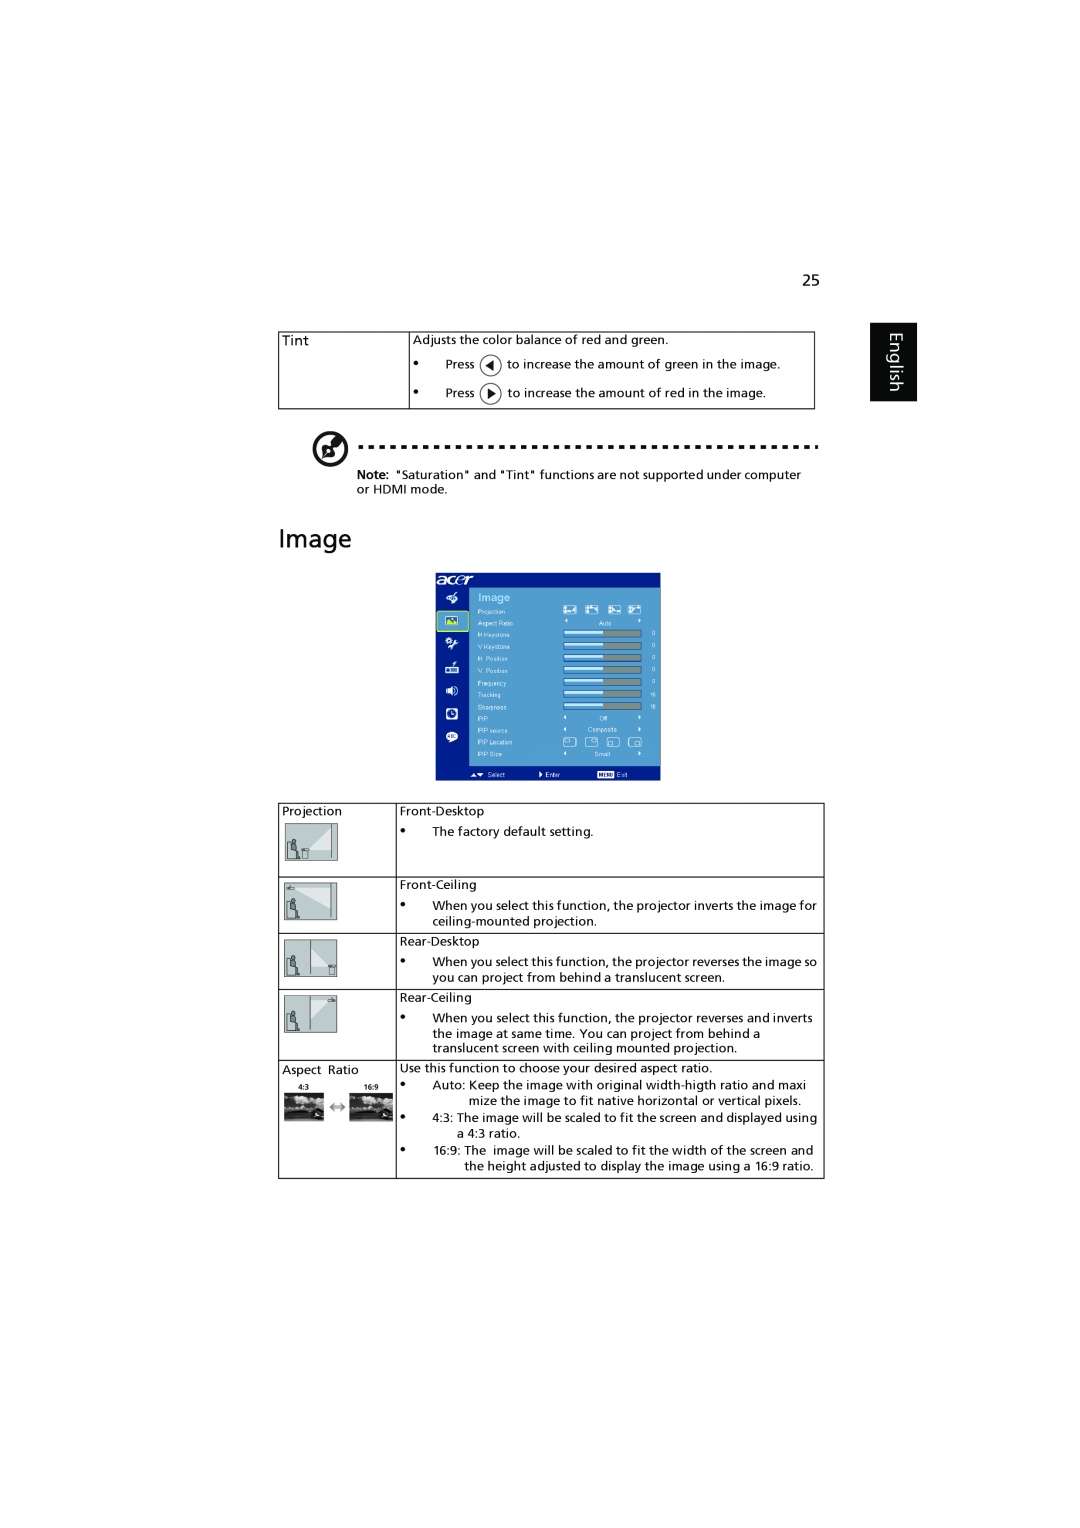 Acer P7203, P7200i, P7205 manual Image, English, Tint 